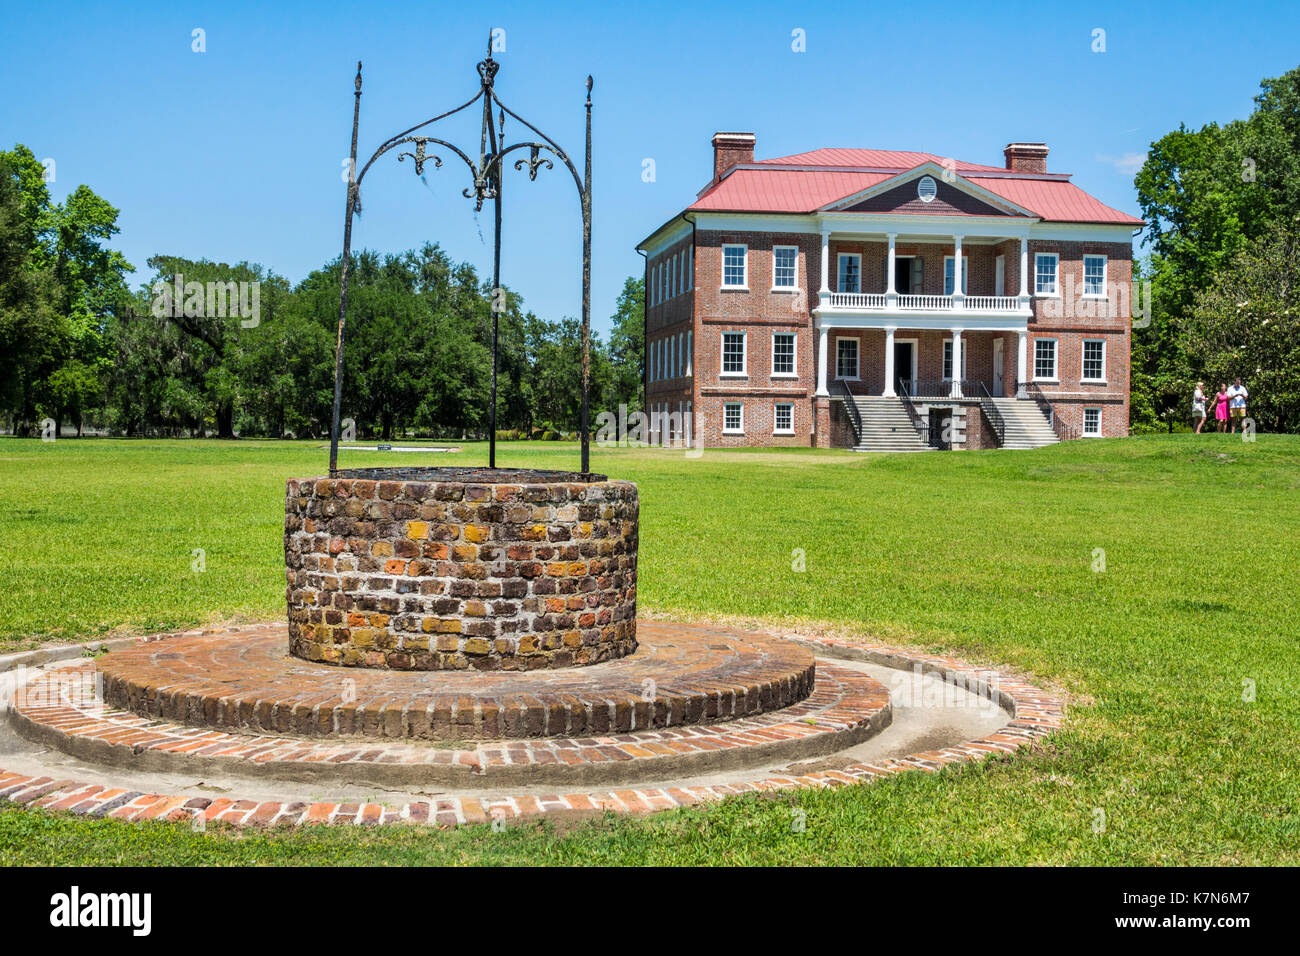 Charleston South Carolina, Drayton Hall, historische Plantage, Erhaltung, palladianische Architektur, Ziegelwasserbrunnen, SC170514234 Stockfoto